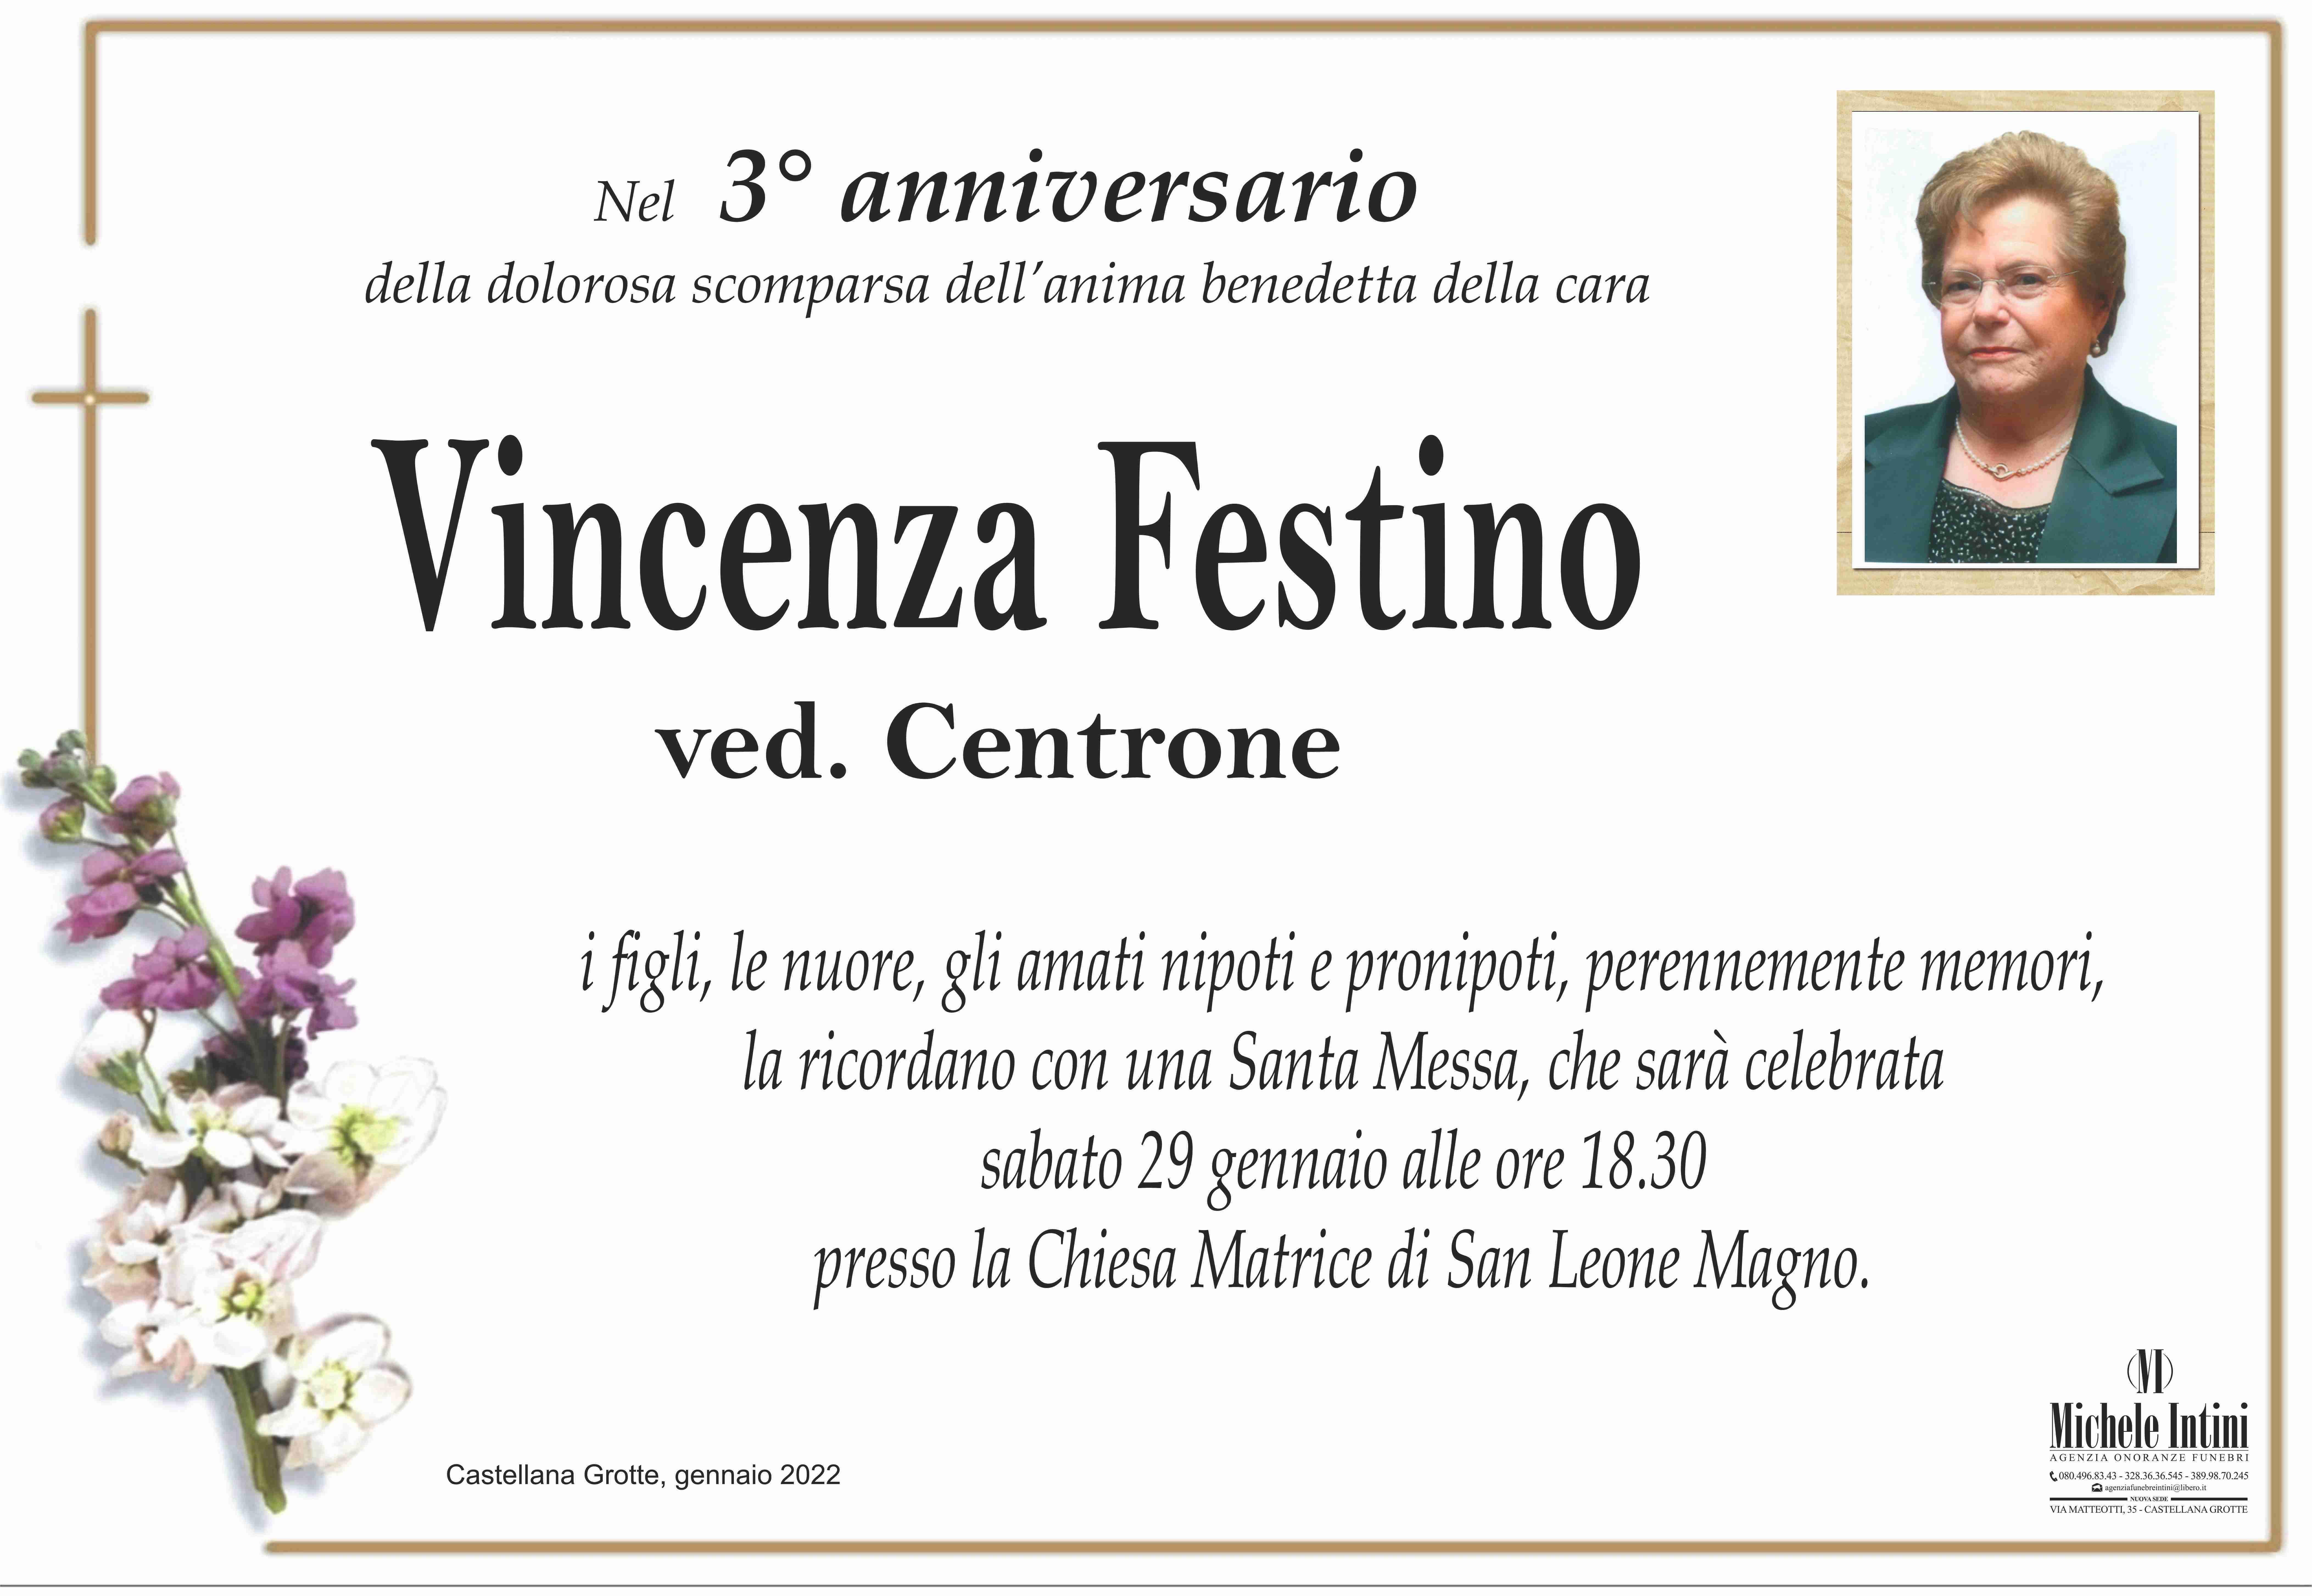 Vincenza Festino